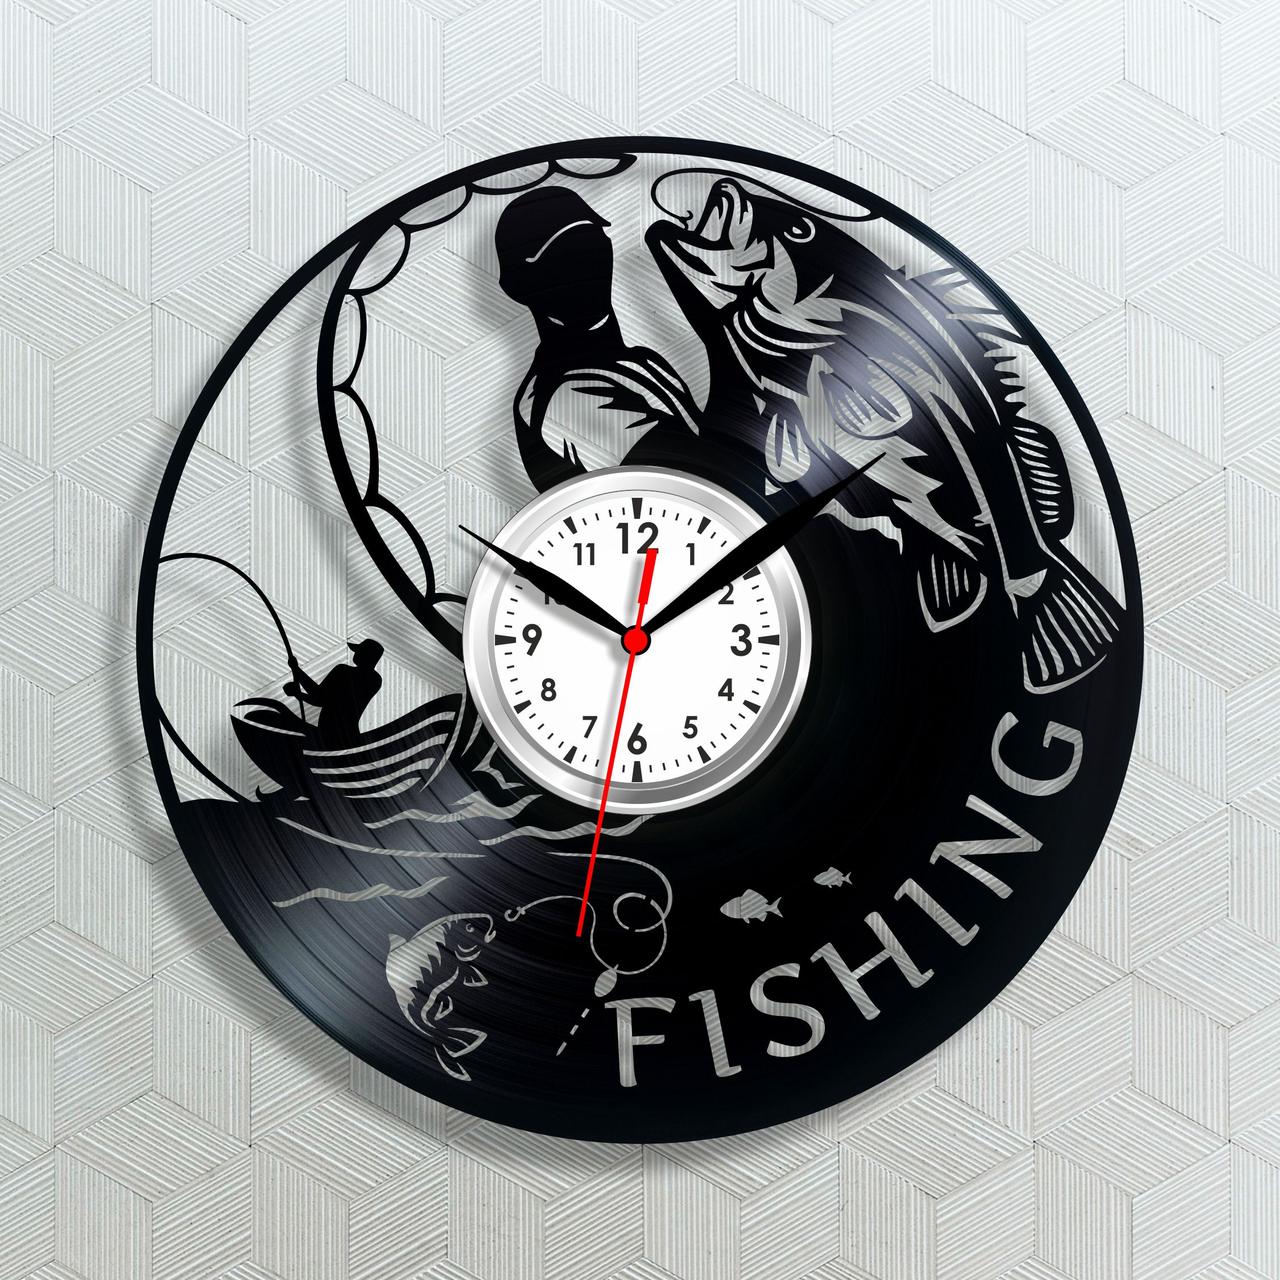 Риболовля-годинник Подарунок риболовлі Рибалку чоловікові Fishing годинник Настінний годинник Годинник у гараж Стрелковий годинник 30 см